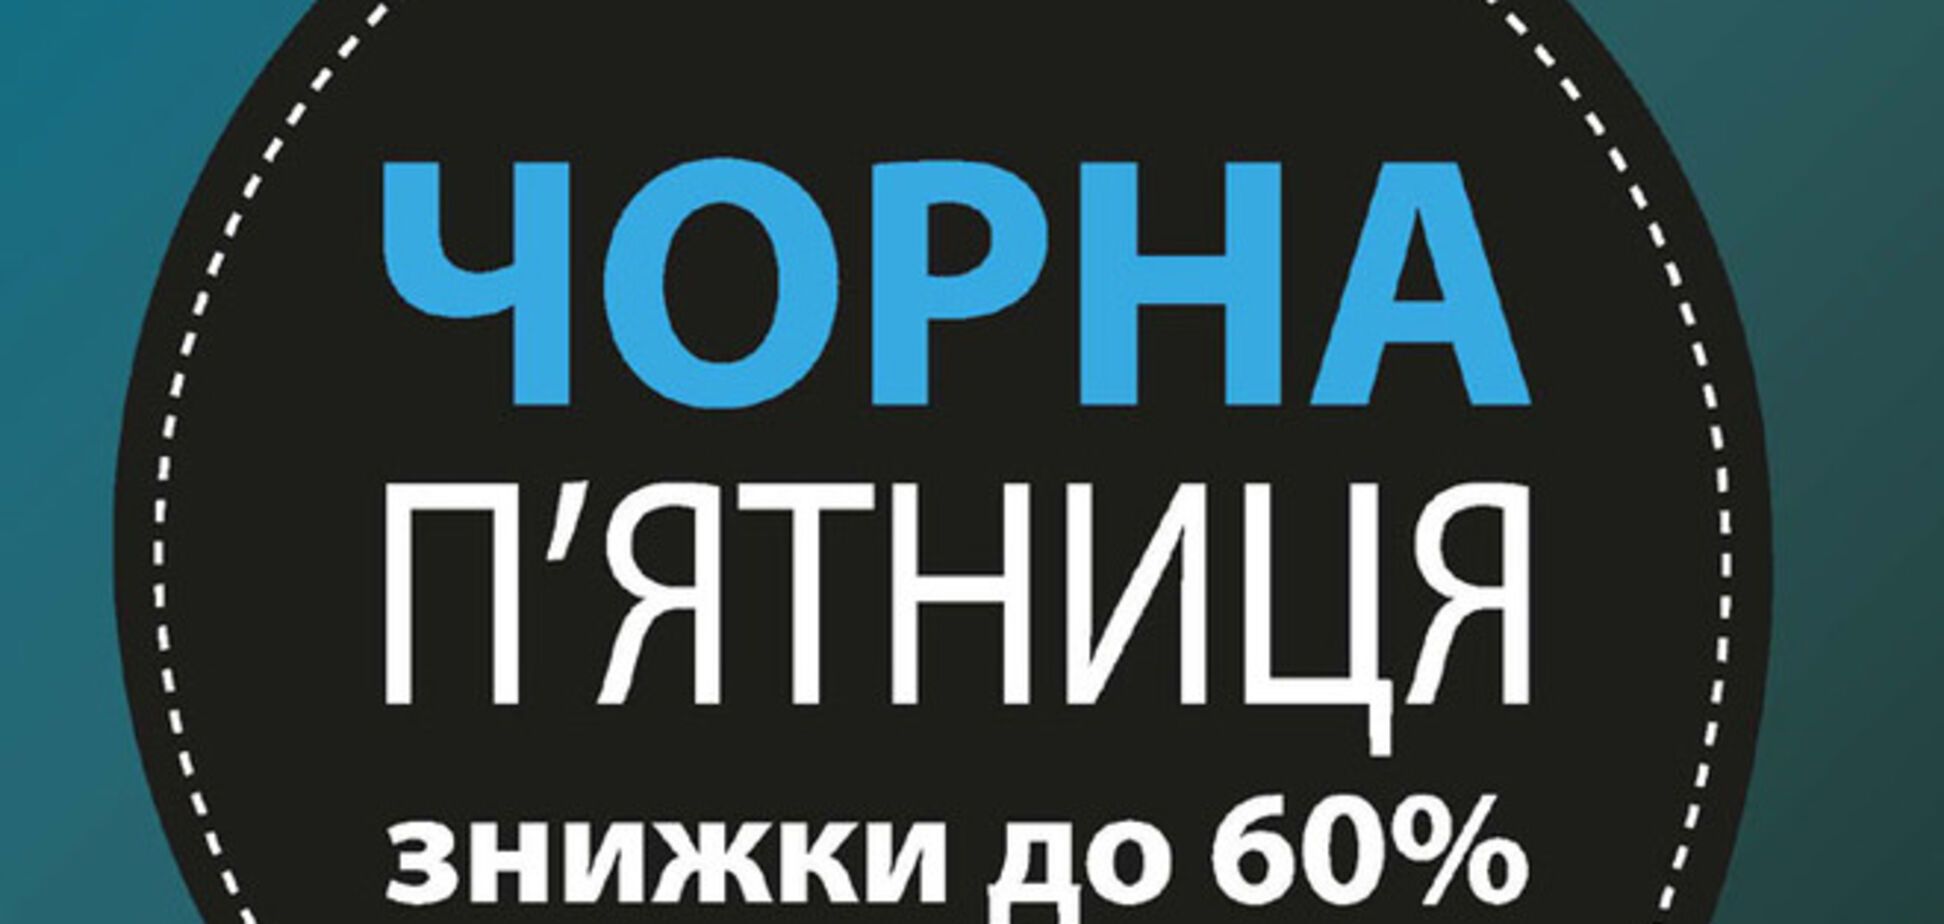 В Киеве 'черная пятница' с распродажами будет в магазинах обуви и техники